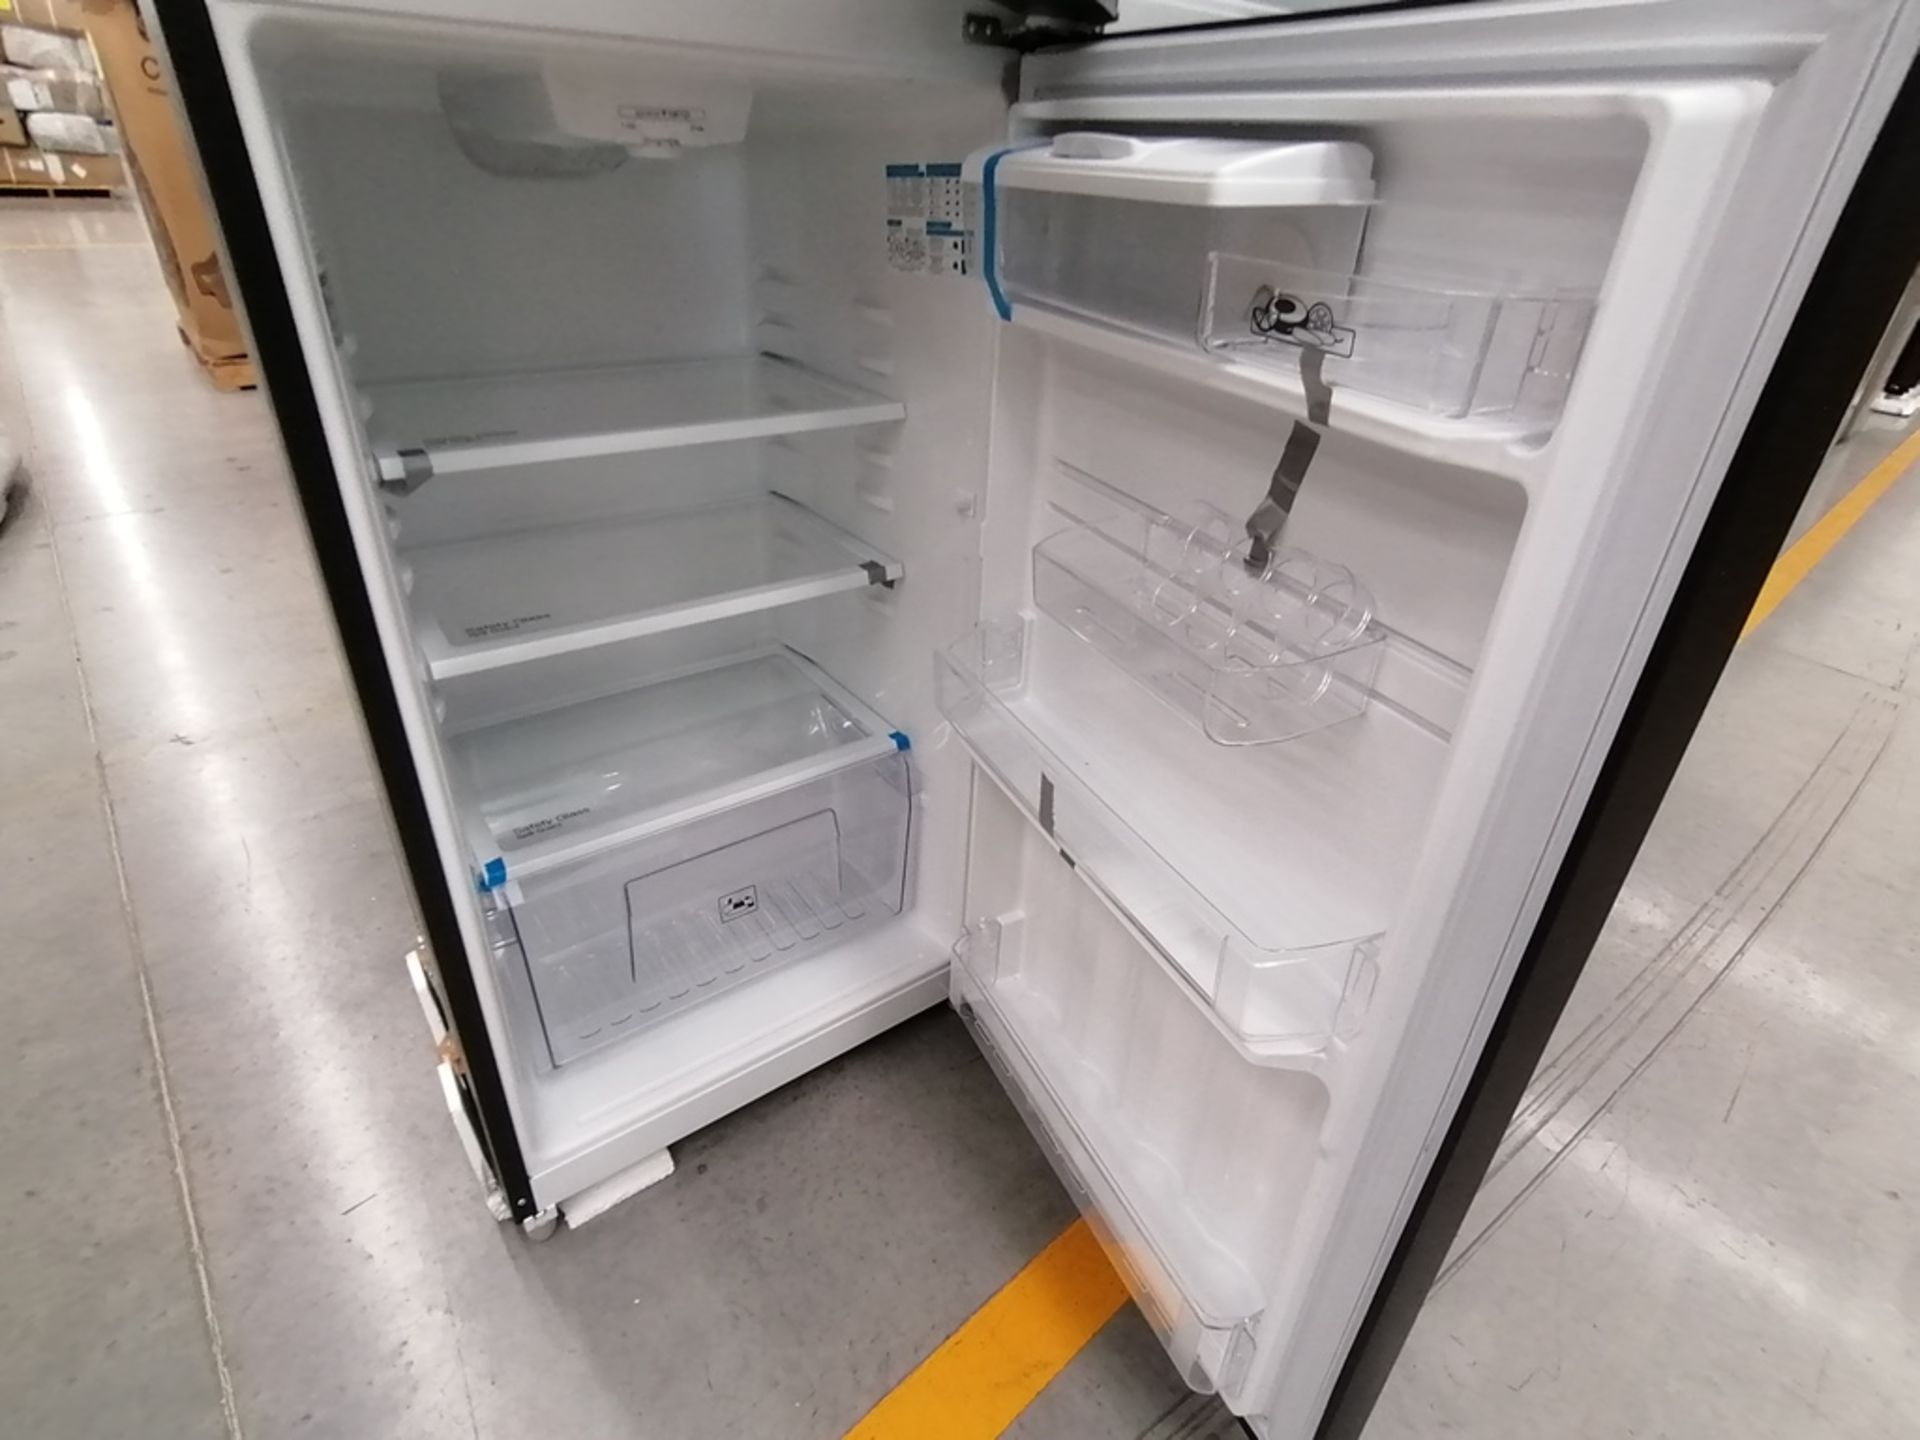 Lote de 2 Refrigeradores incluye: 1 Refrigerador, Marca Winia, Modelo DFR32210GNV, Serie MR217N104 - Image 7 of 15